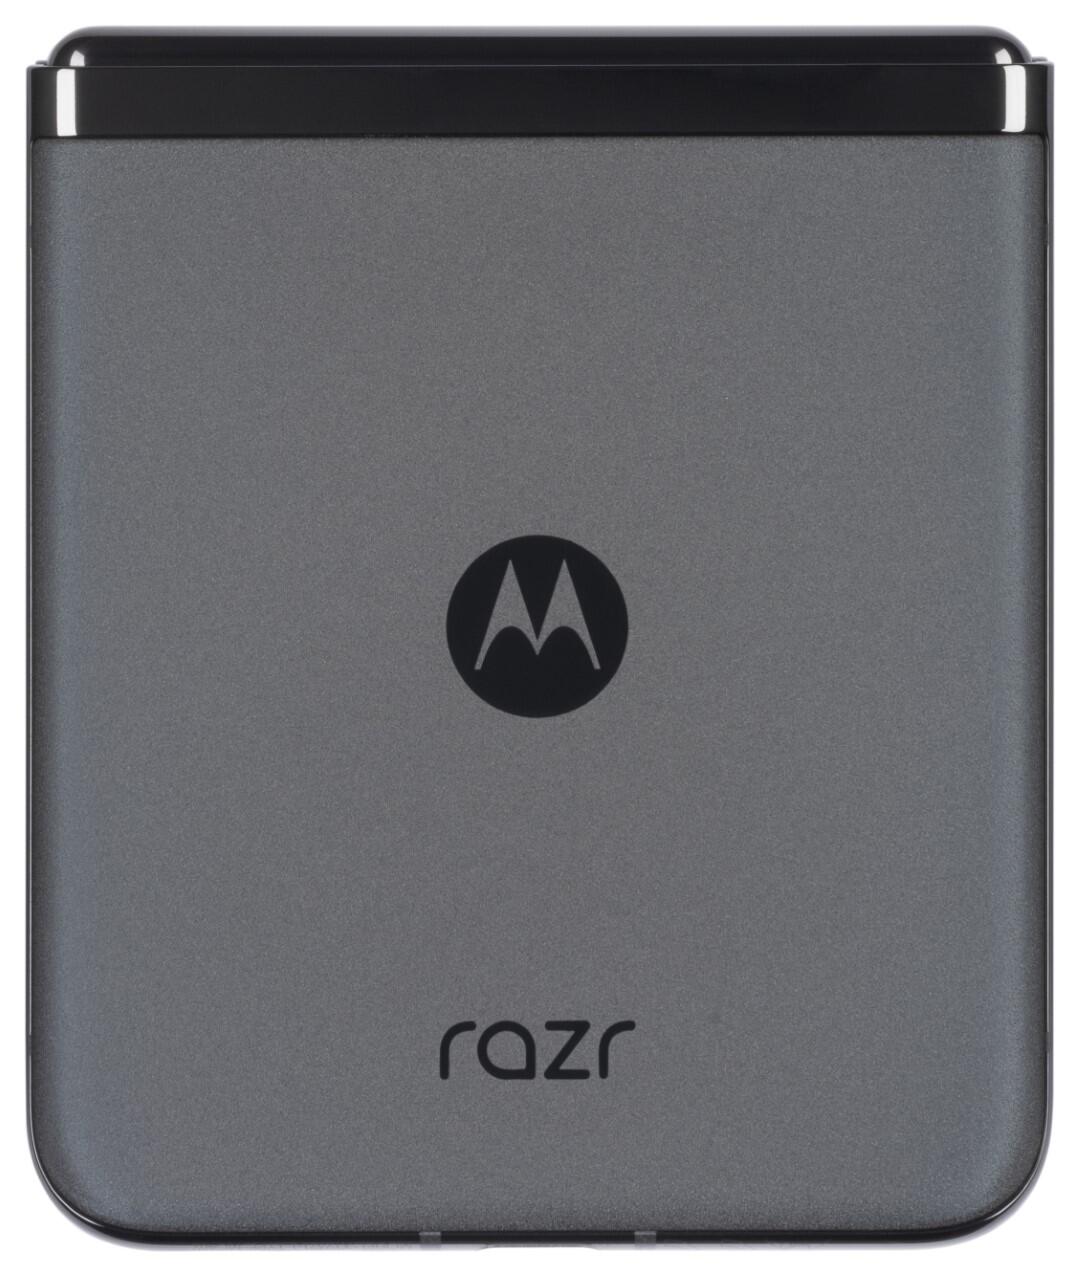 razr 40 ultra, 256GB Motorola